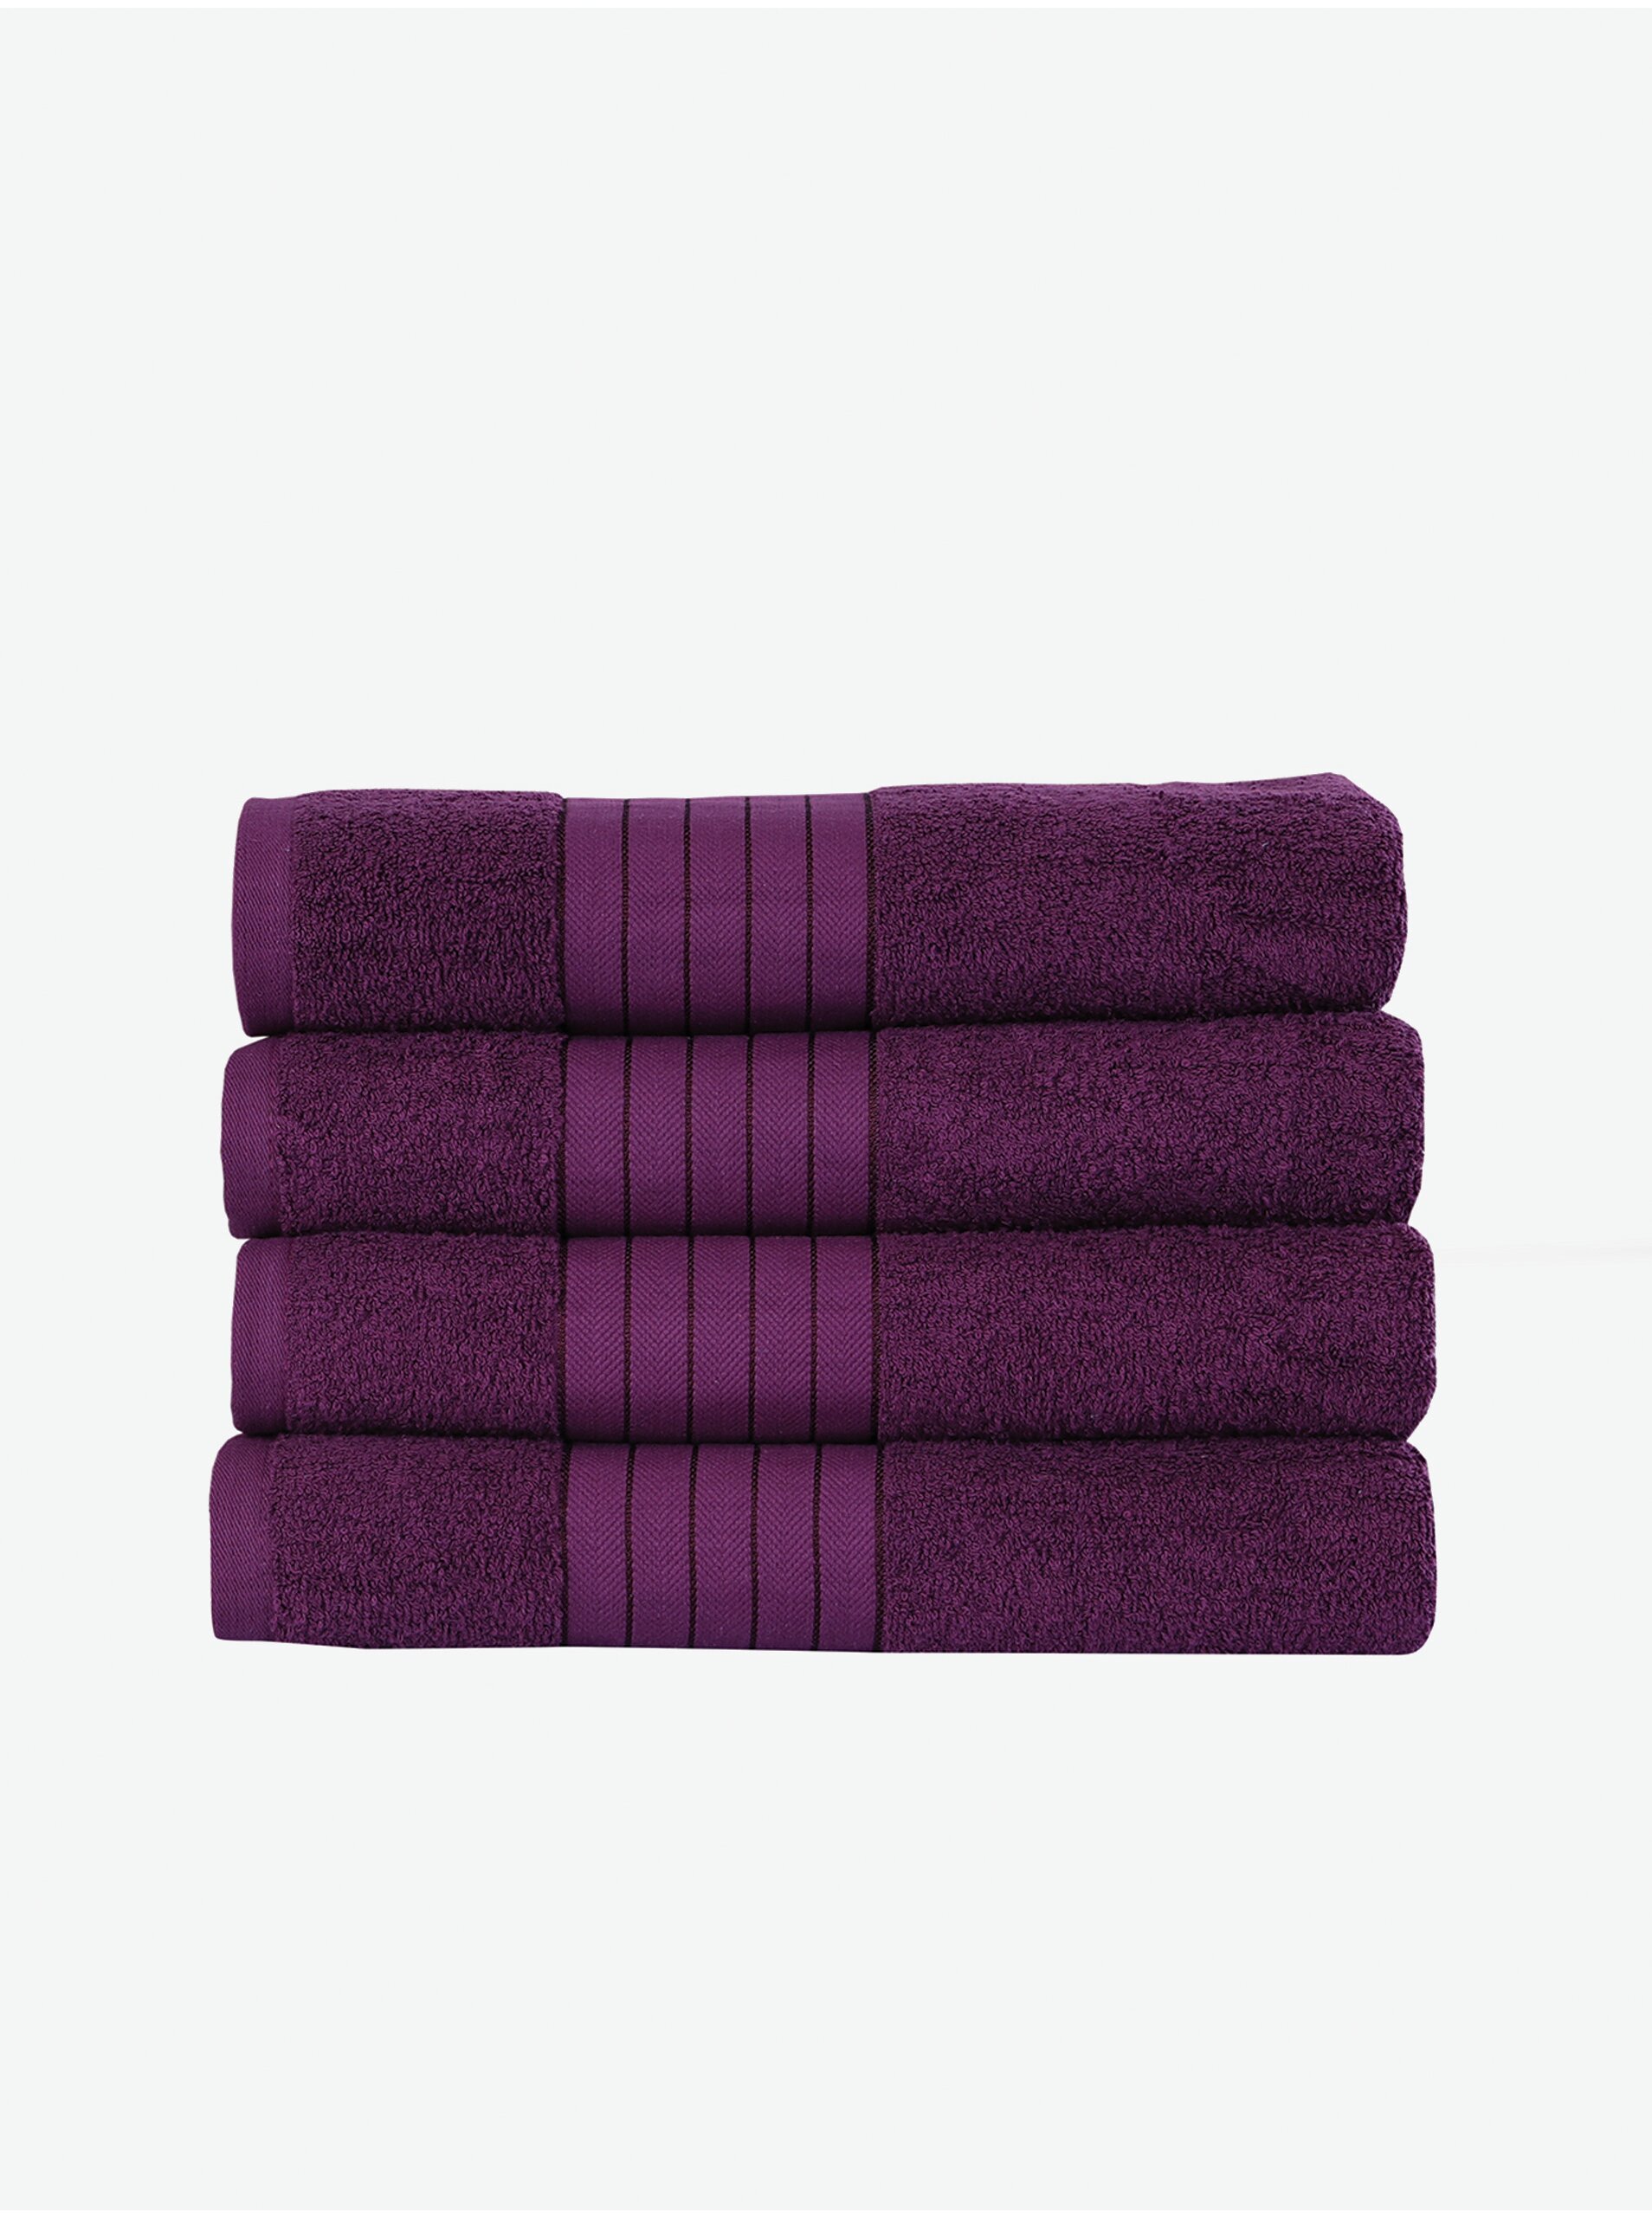 Lacno 50 x 100 cm - Sada štyroch fialových uterákov Good Morning